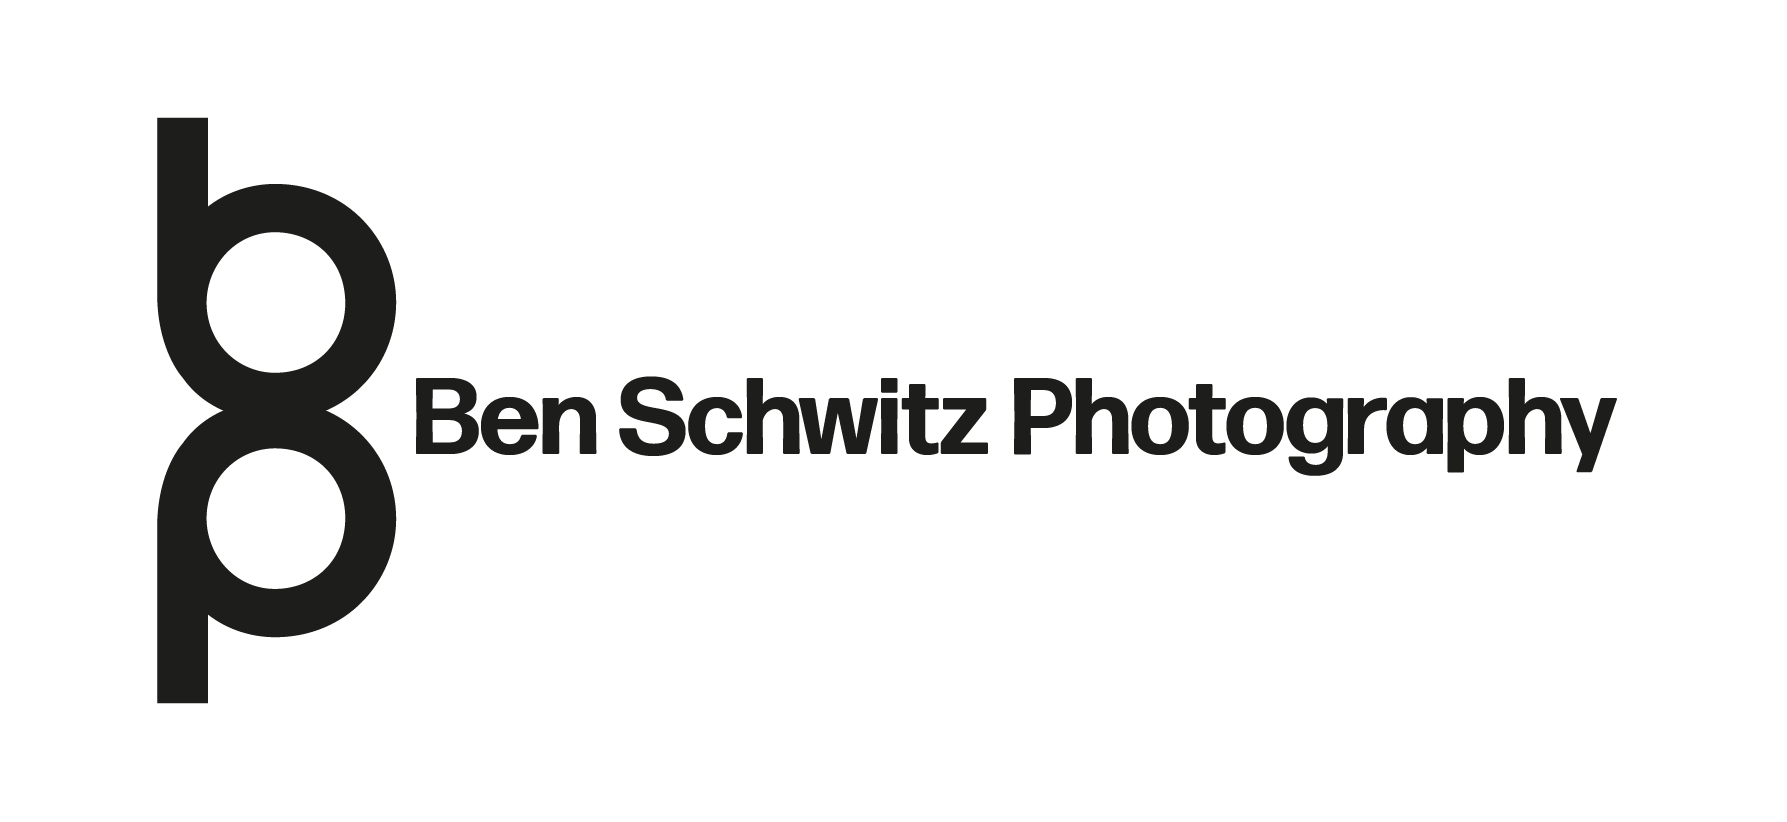 Ben Schwitz Photography